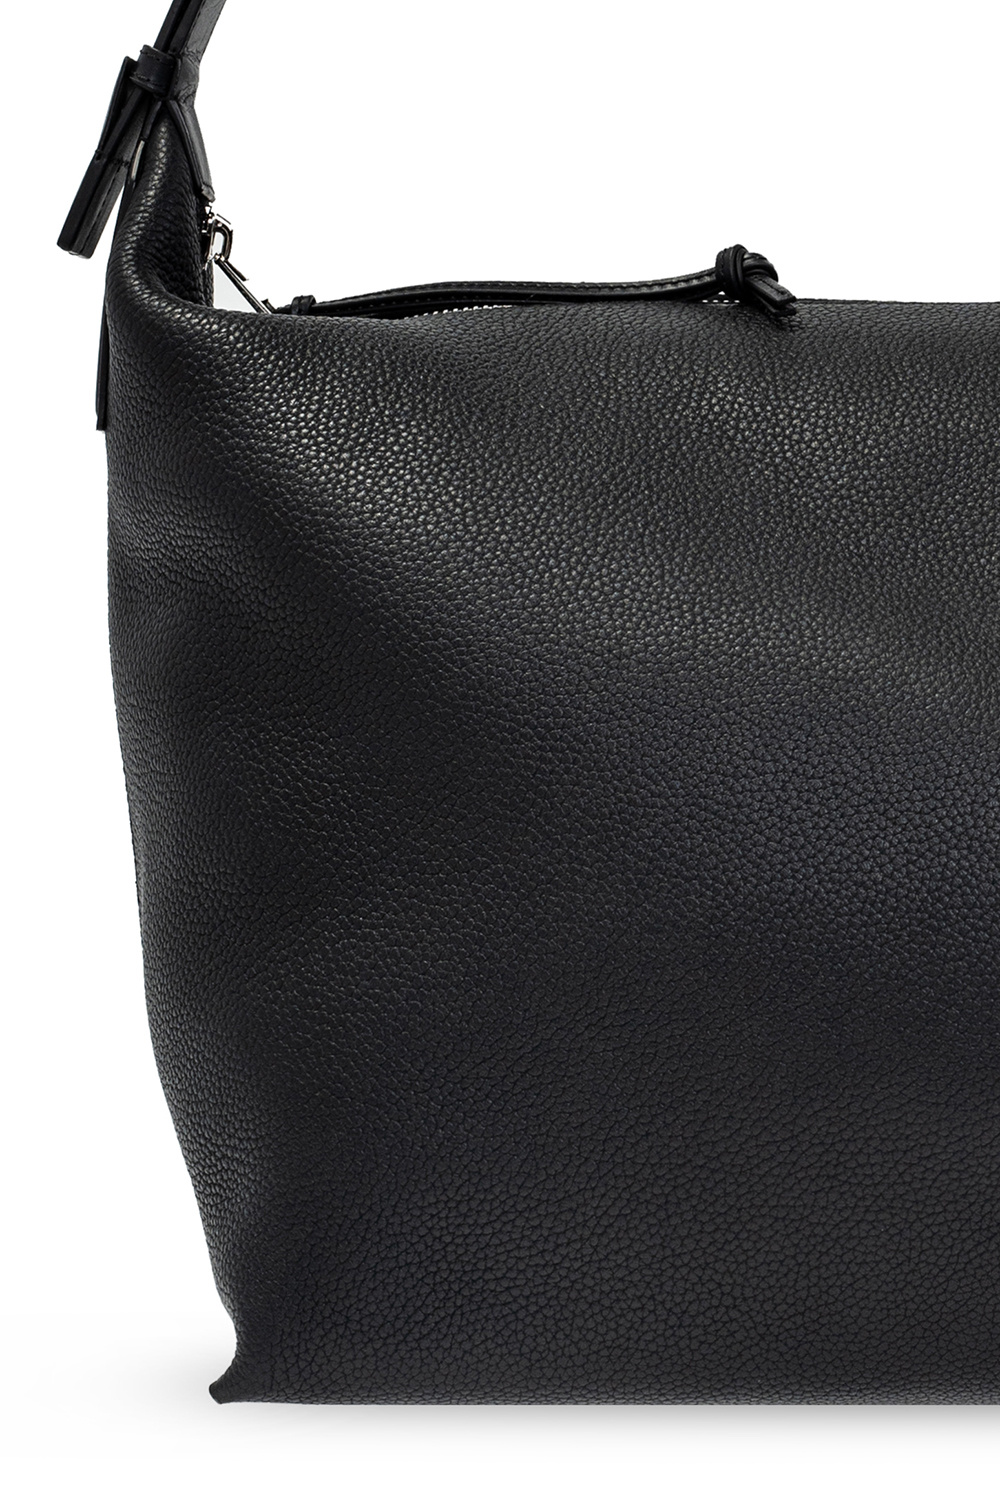 Loewe ‘Cubi Large’ shoulder bag